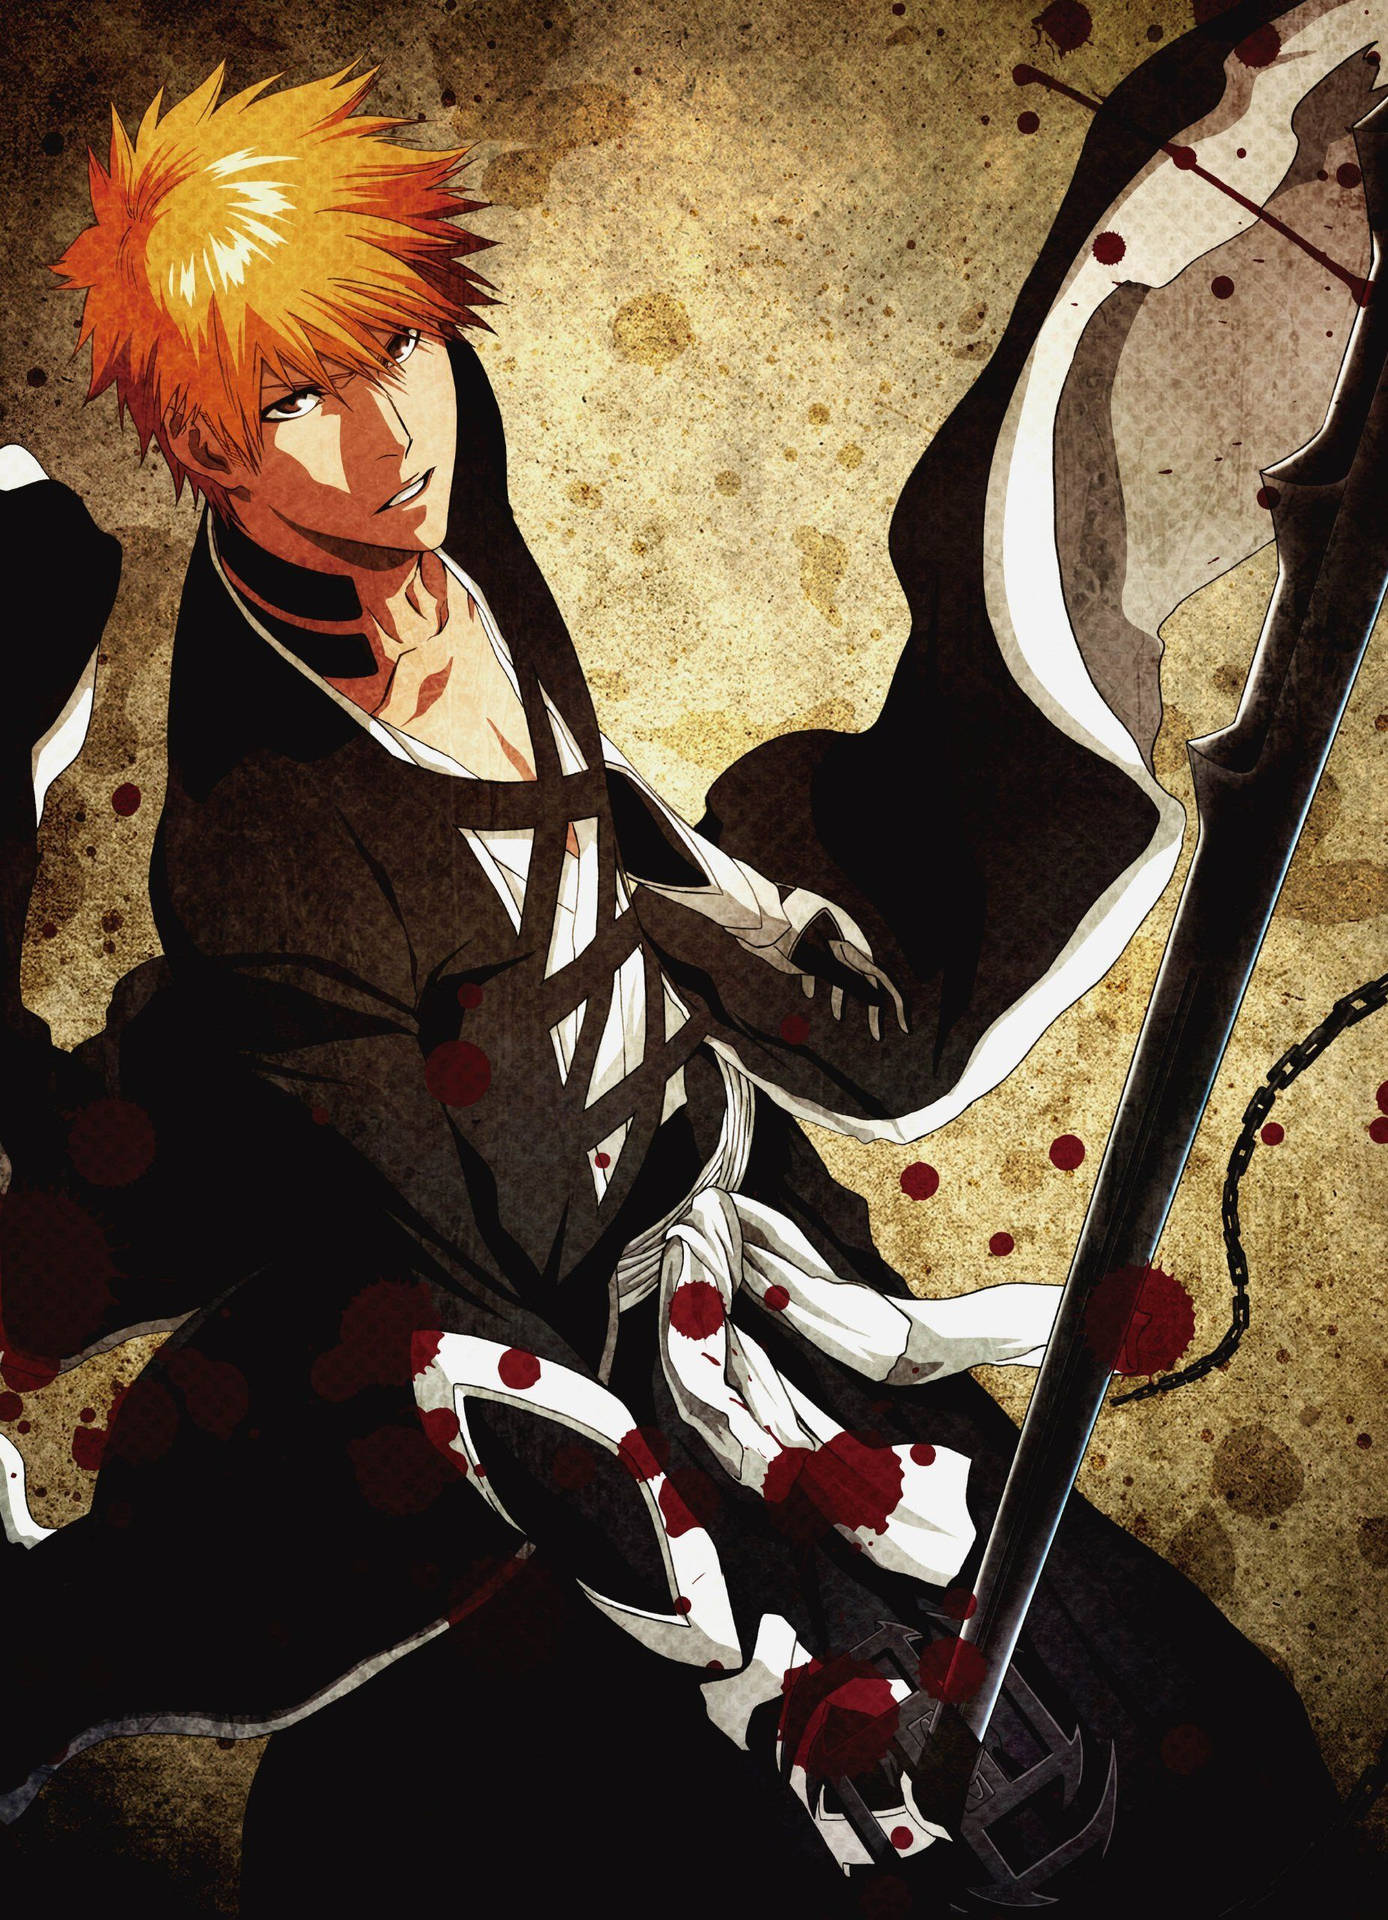 Ichigo Kurosaki, the protagonist of the manga and anime series "Bleach" Wallpaper